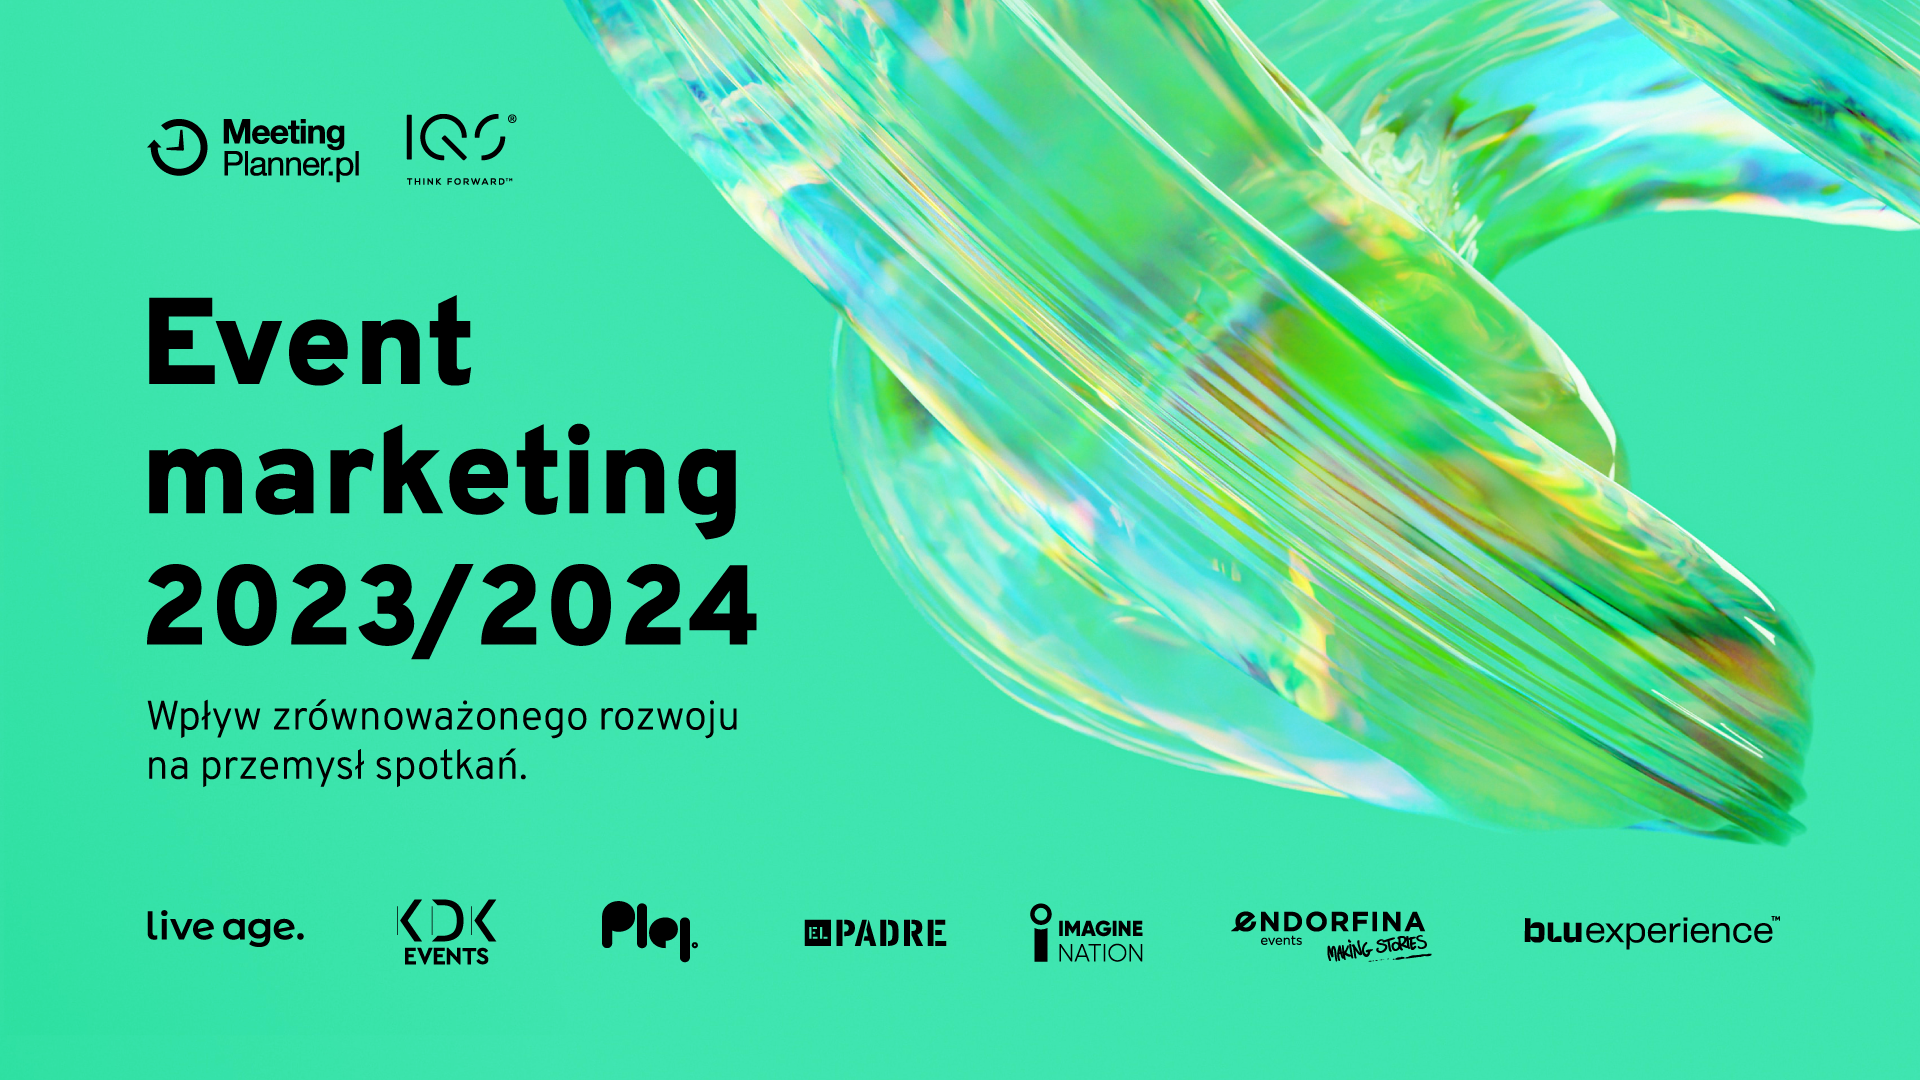 raport event marketing zrównoważony rozwój 2023 2024 bluexperience